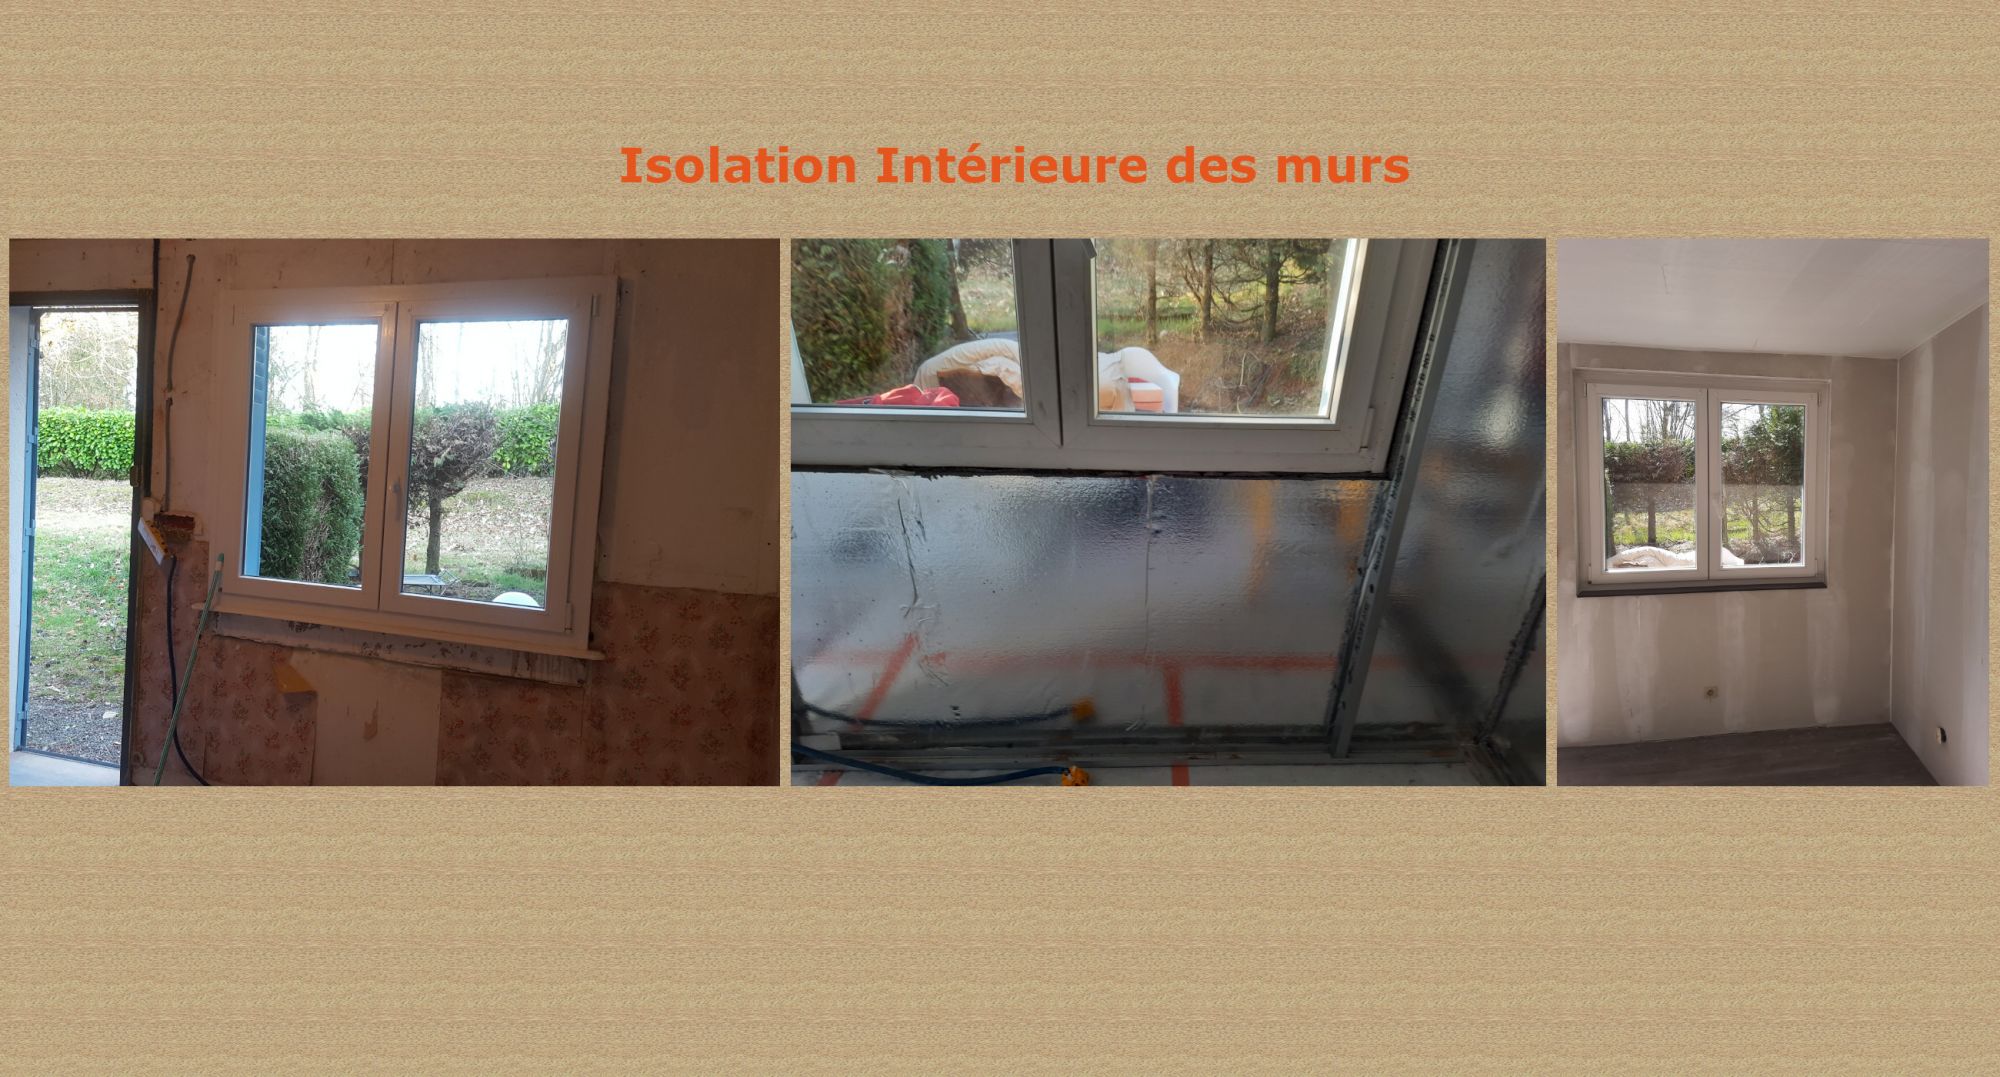 Isolation Intérieure des murs à Sermamagny près de Belfort Colmar